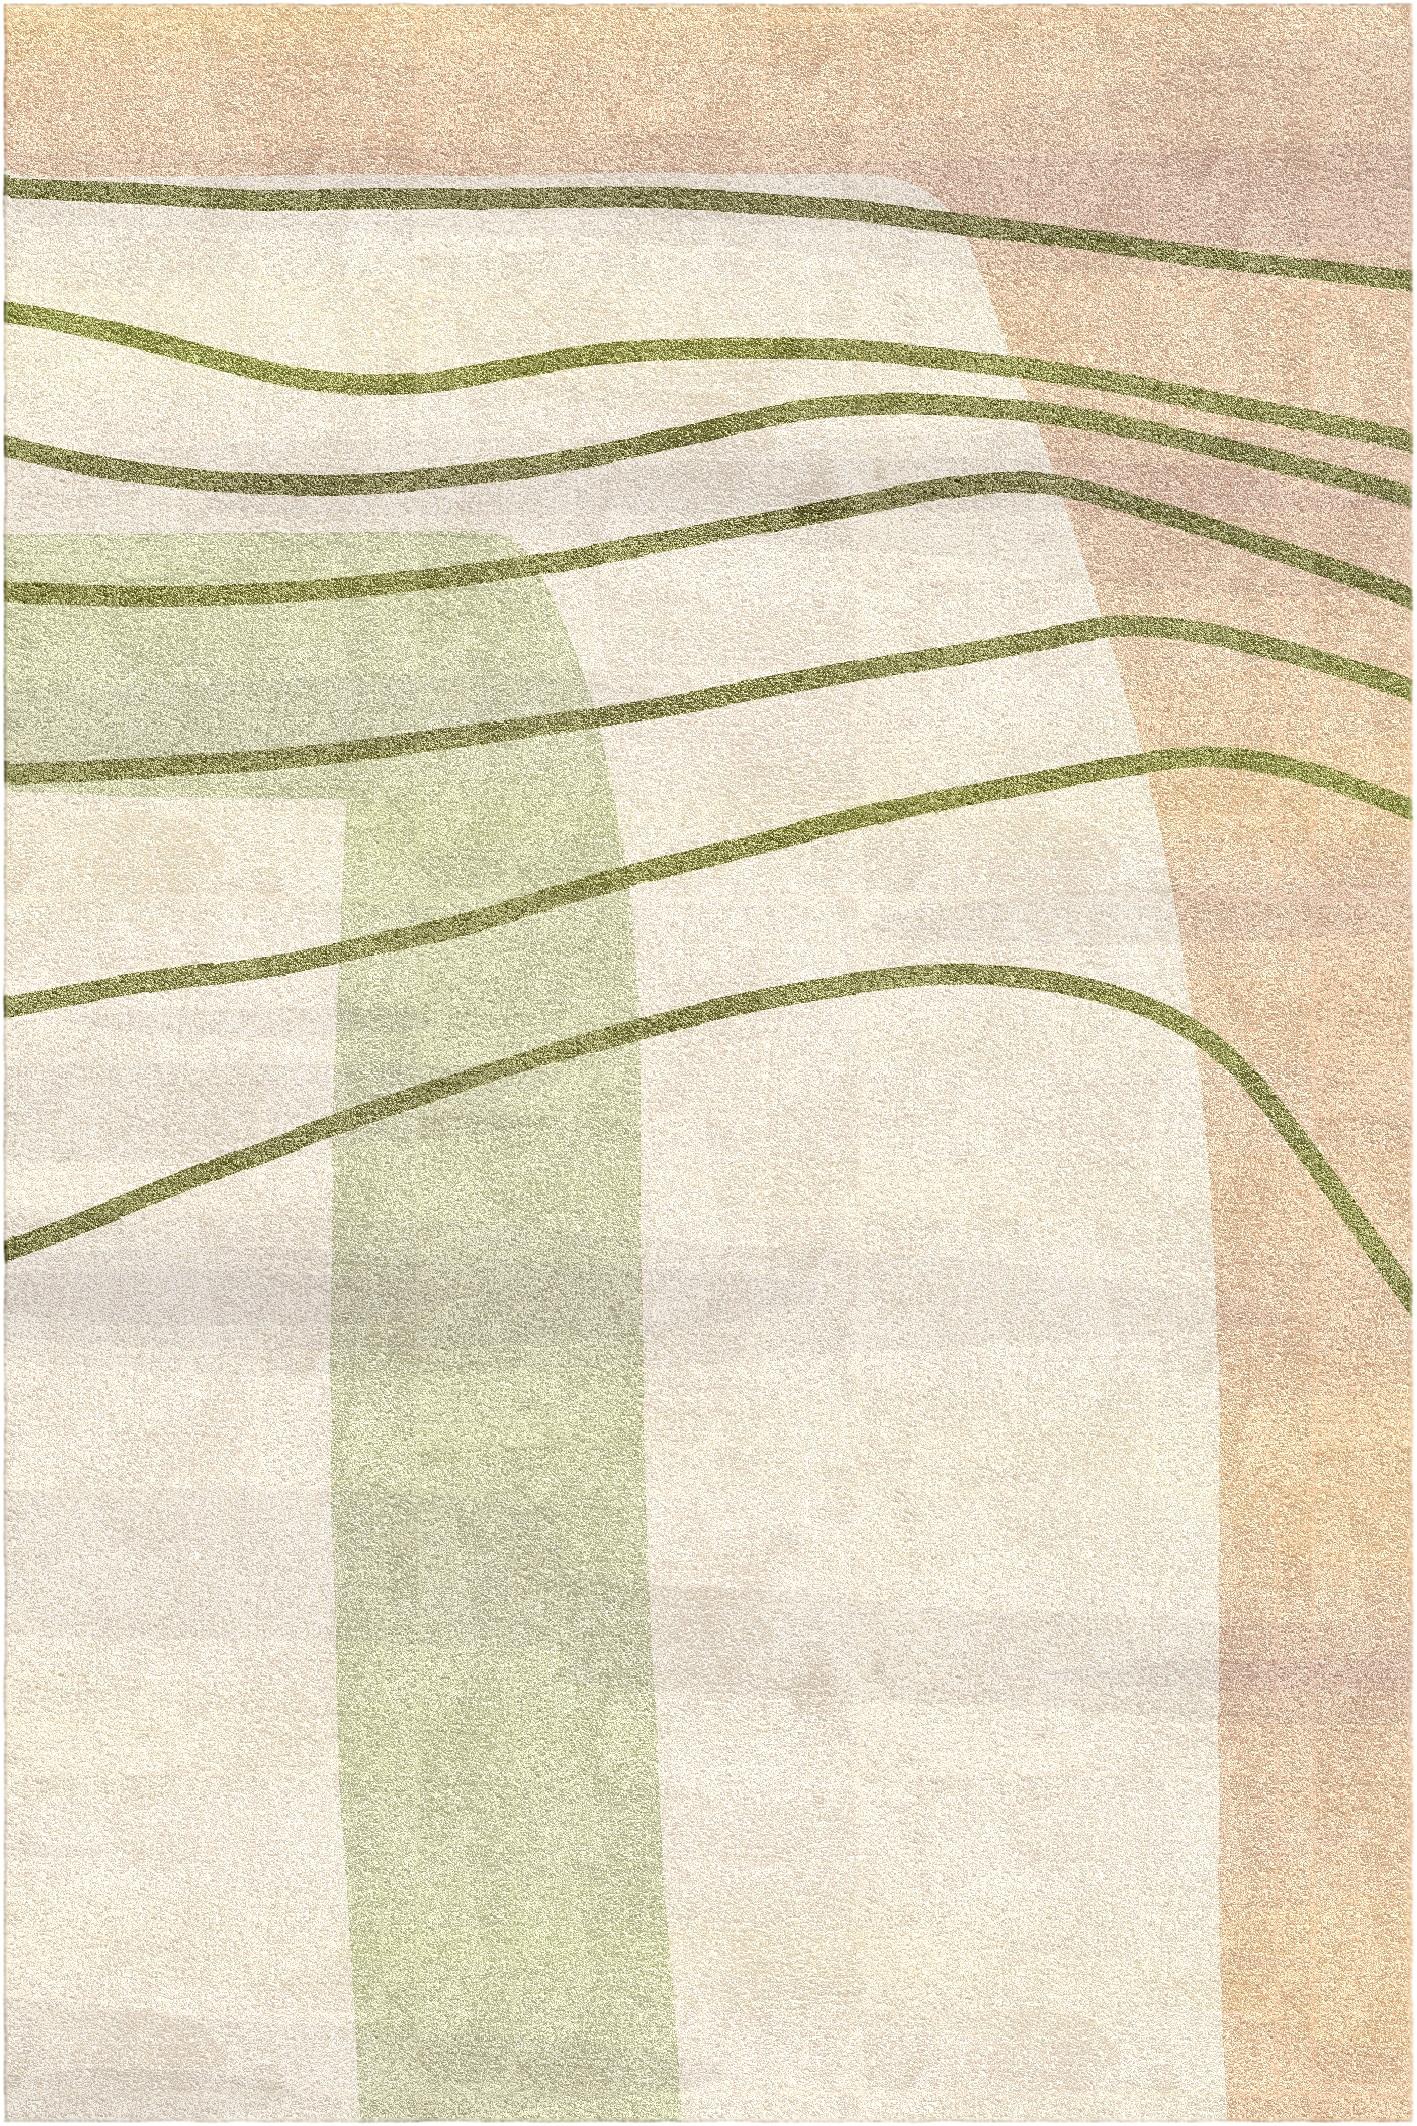 Tapis Sabbia I par Vanessa Ordoñez
Dimensions : D 300 x L 200 x H 1,5 cm
MATERIAL : fibres de bambou et lin

Nommé d'après le mot italien pour 